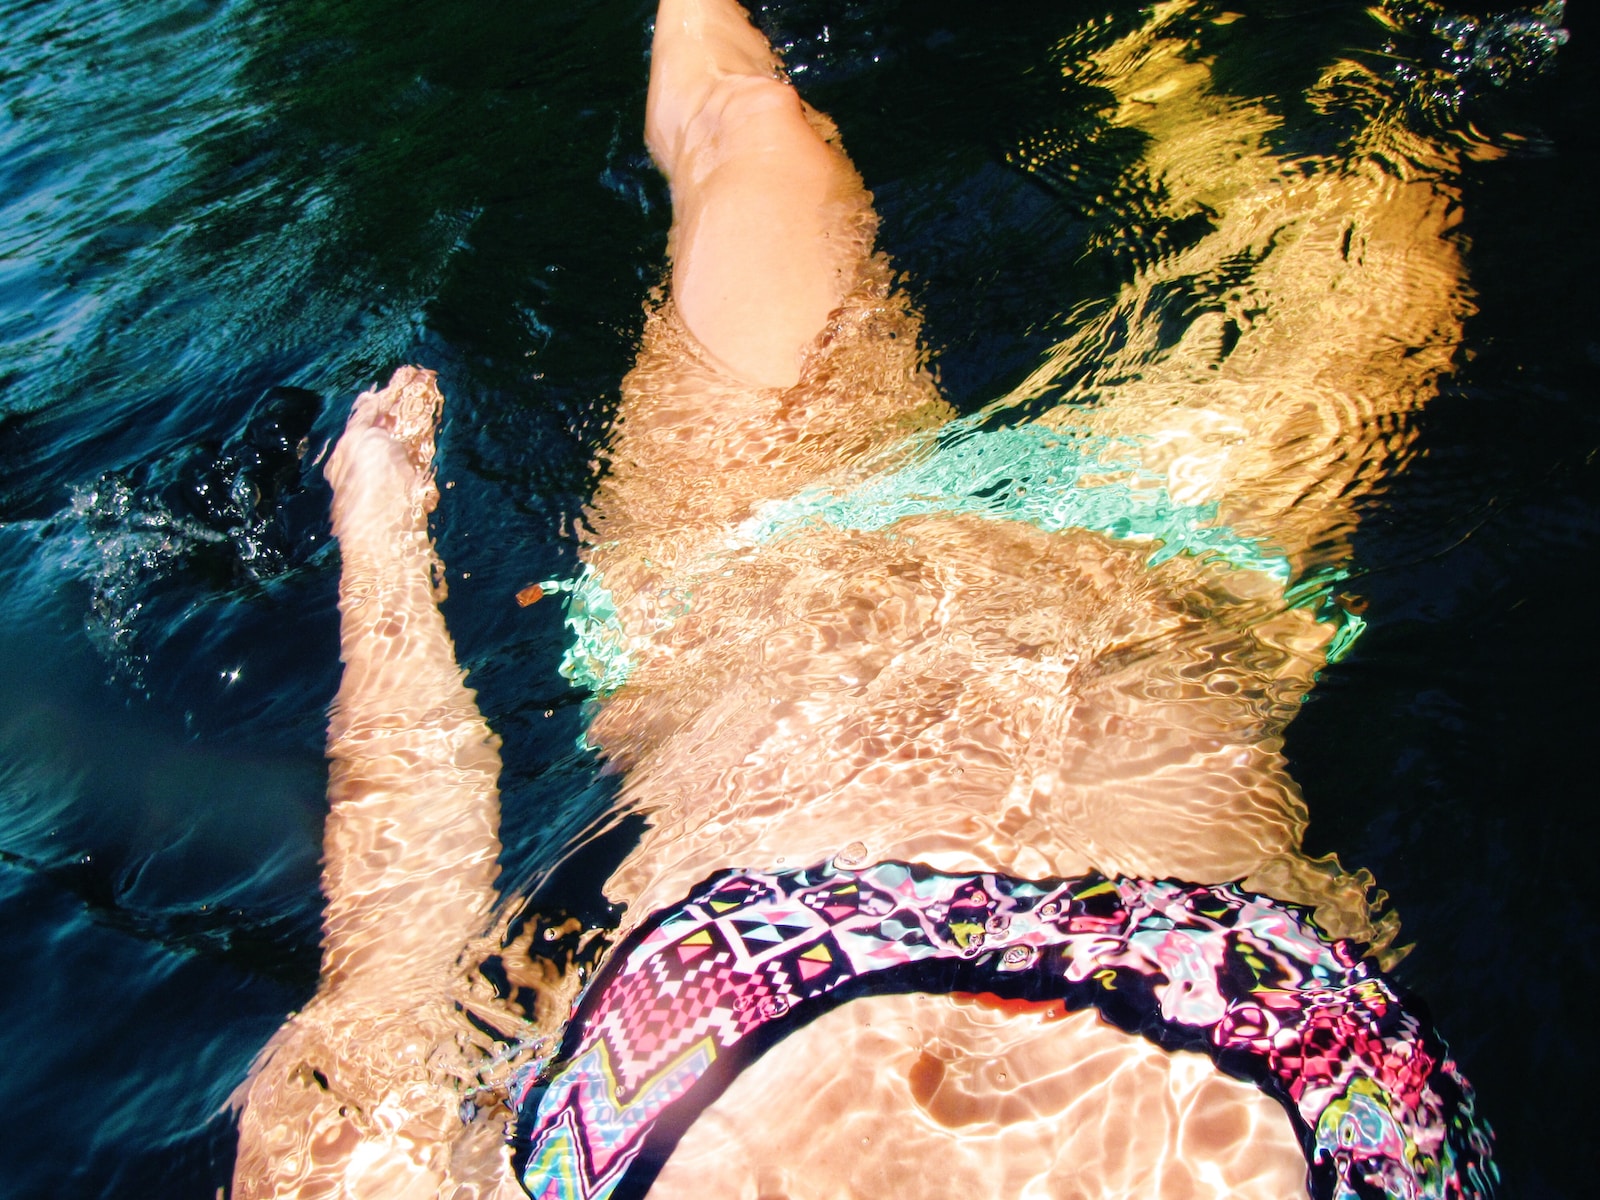 woman wearing bikini in floating in calm body of water